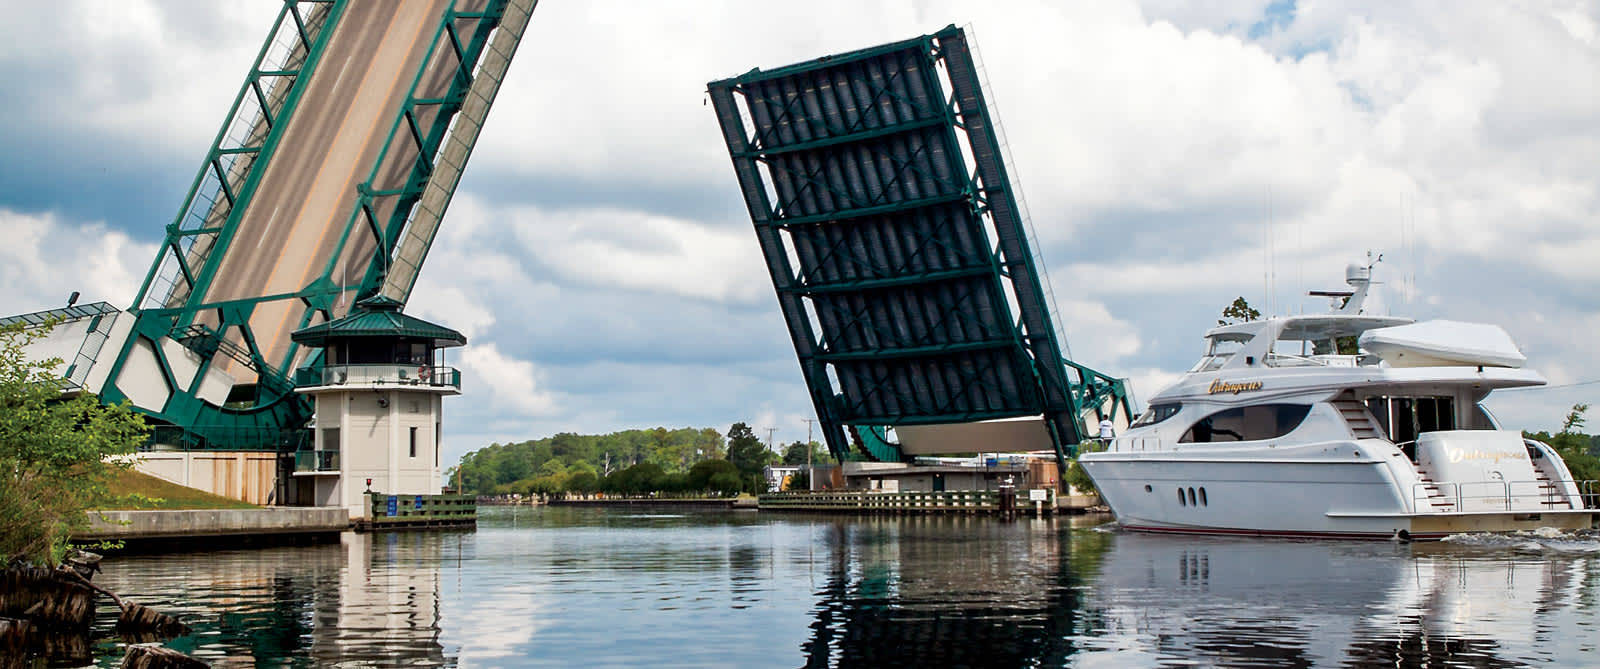 Chesapeake's The Great Bridge Opening Up